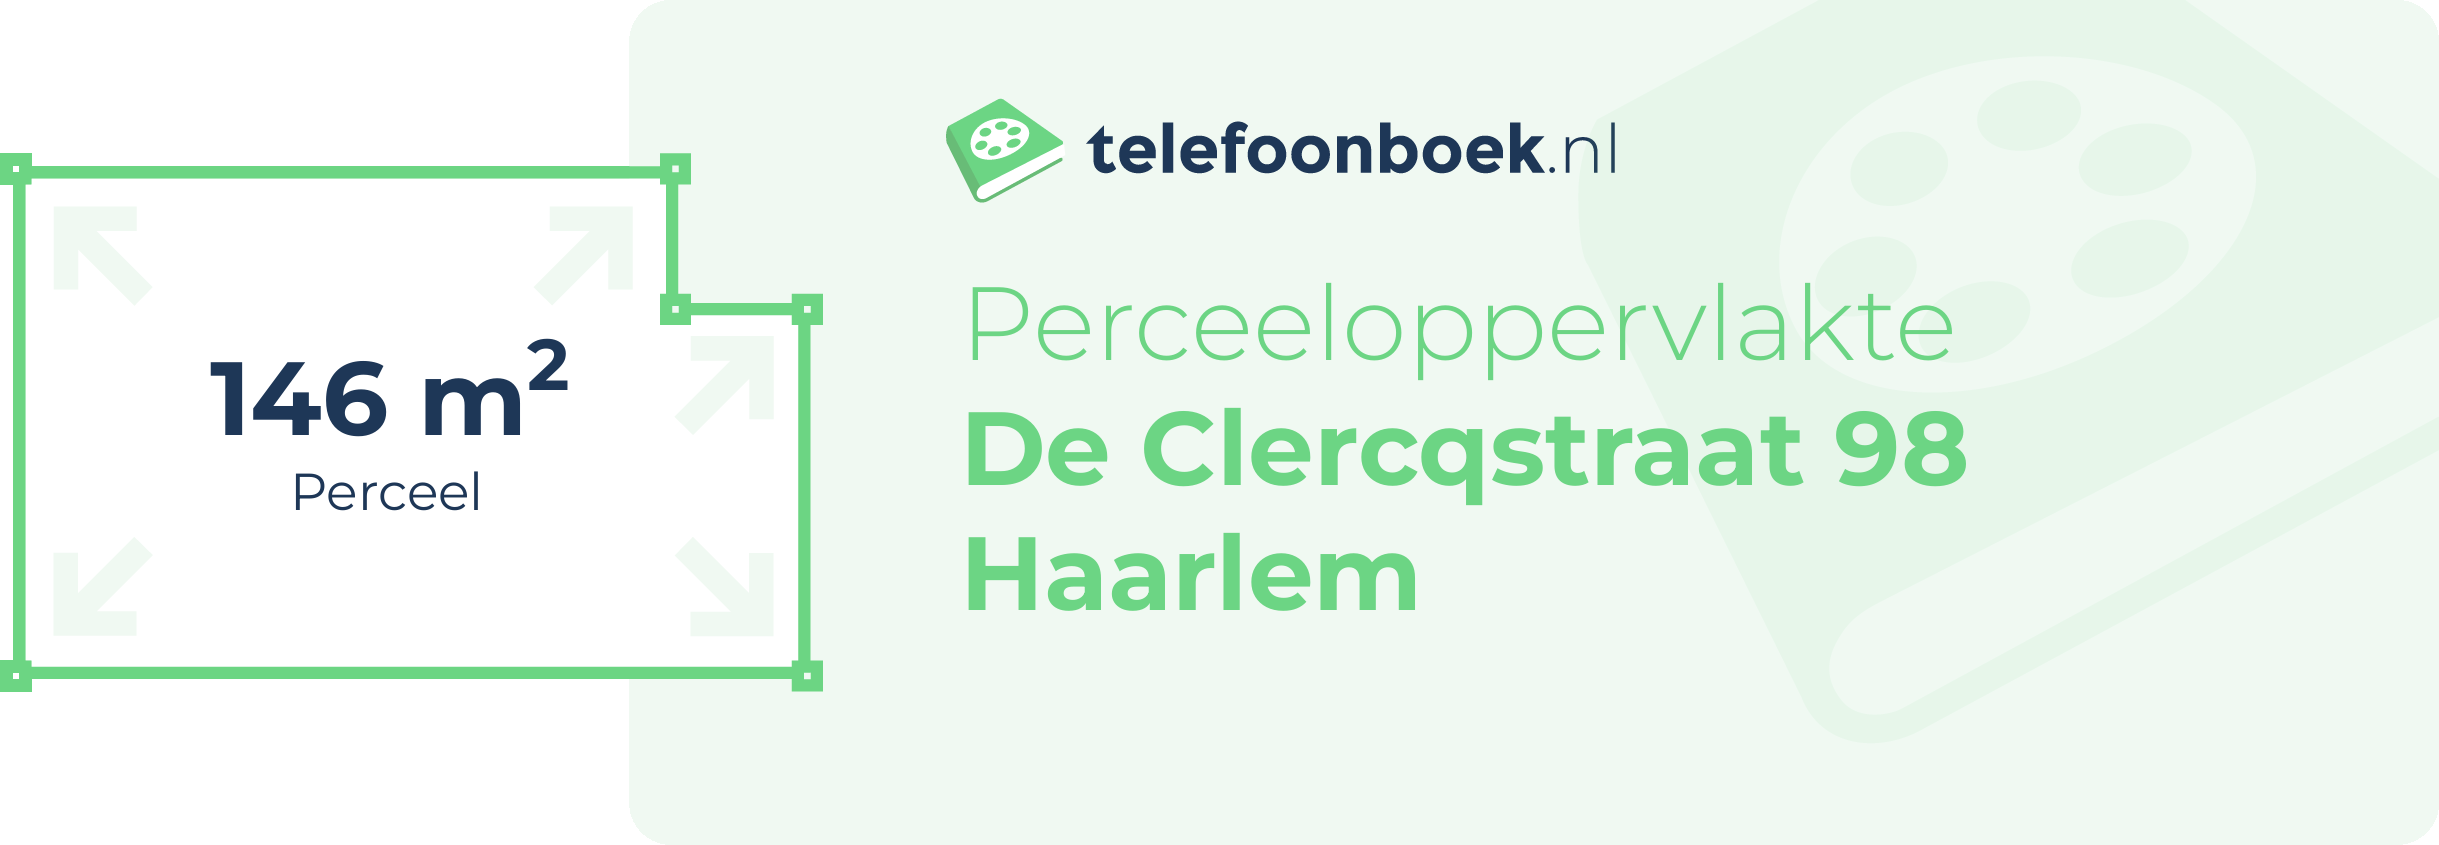 Perceeloppervlakte De Clercqstraat 98 Haarlem